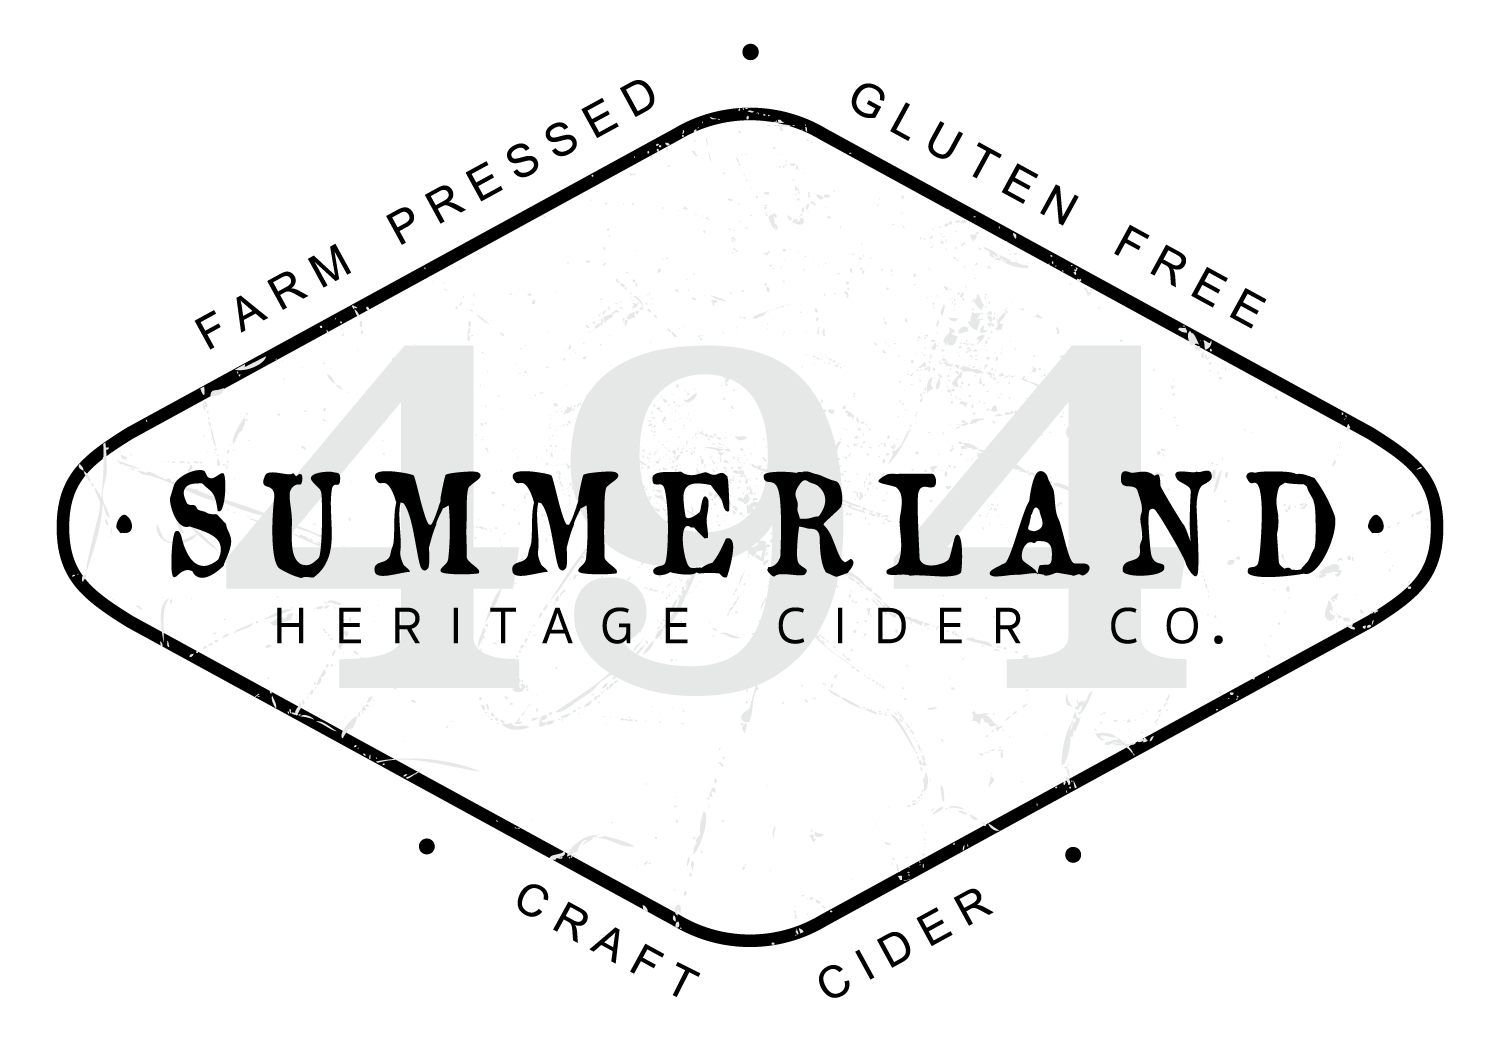 Summerland Heritage Cider Co.